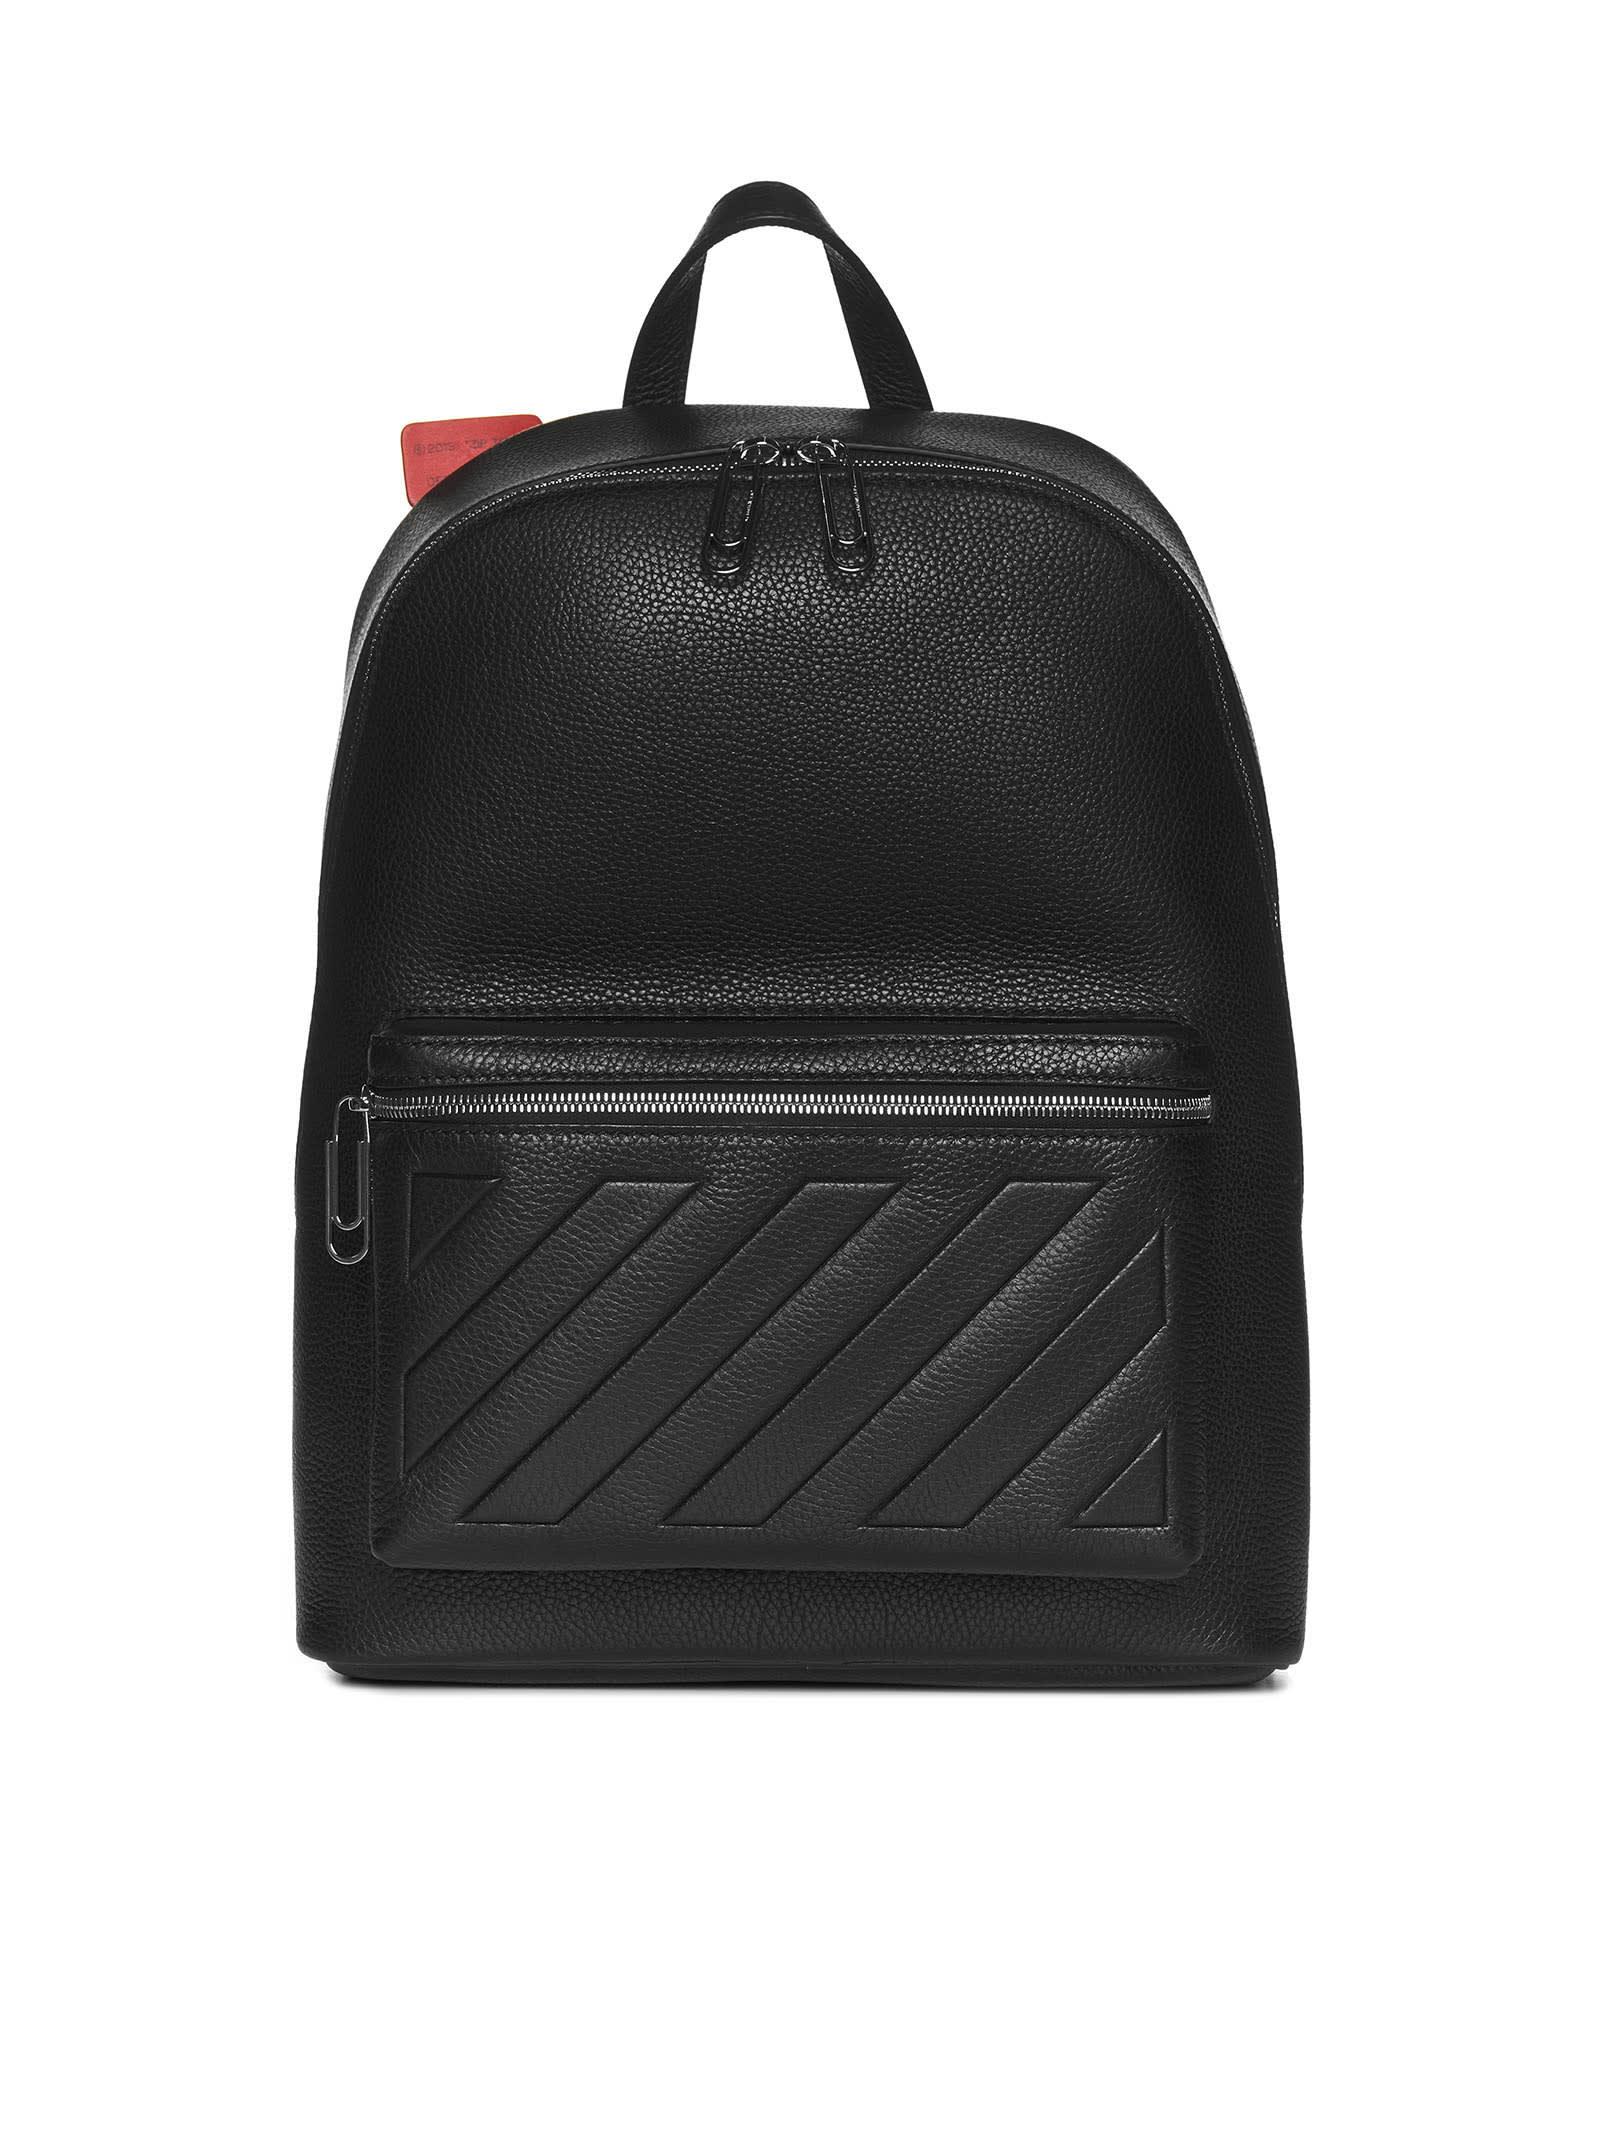 Off-White c/o Virgil Abloh Binder Leather Backpack in Black for Men | Lyst